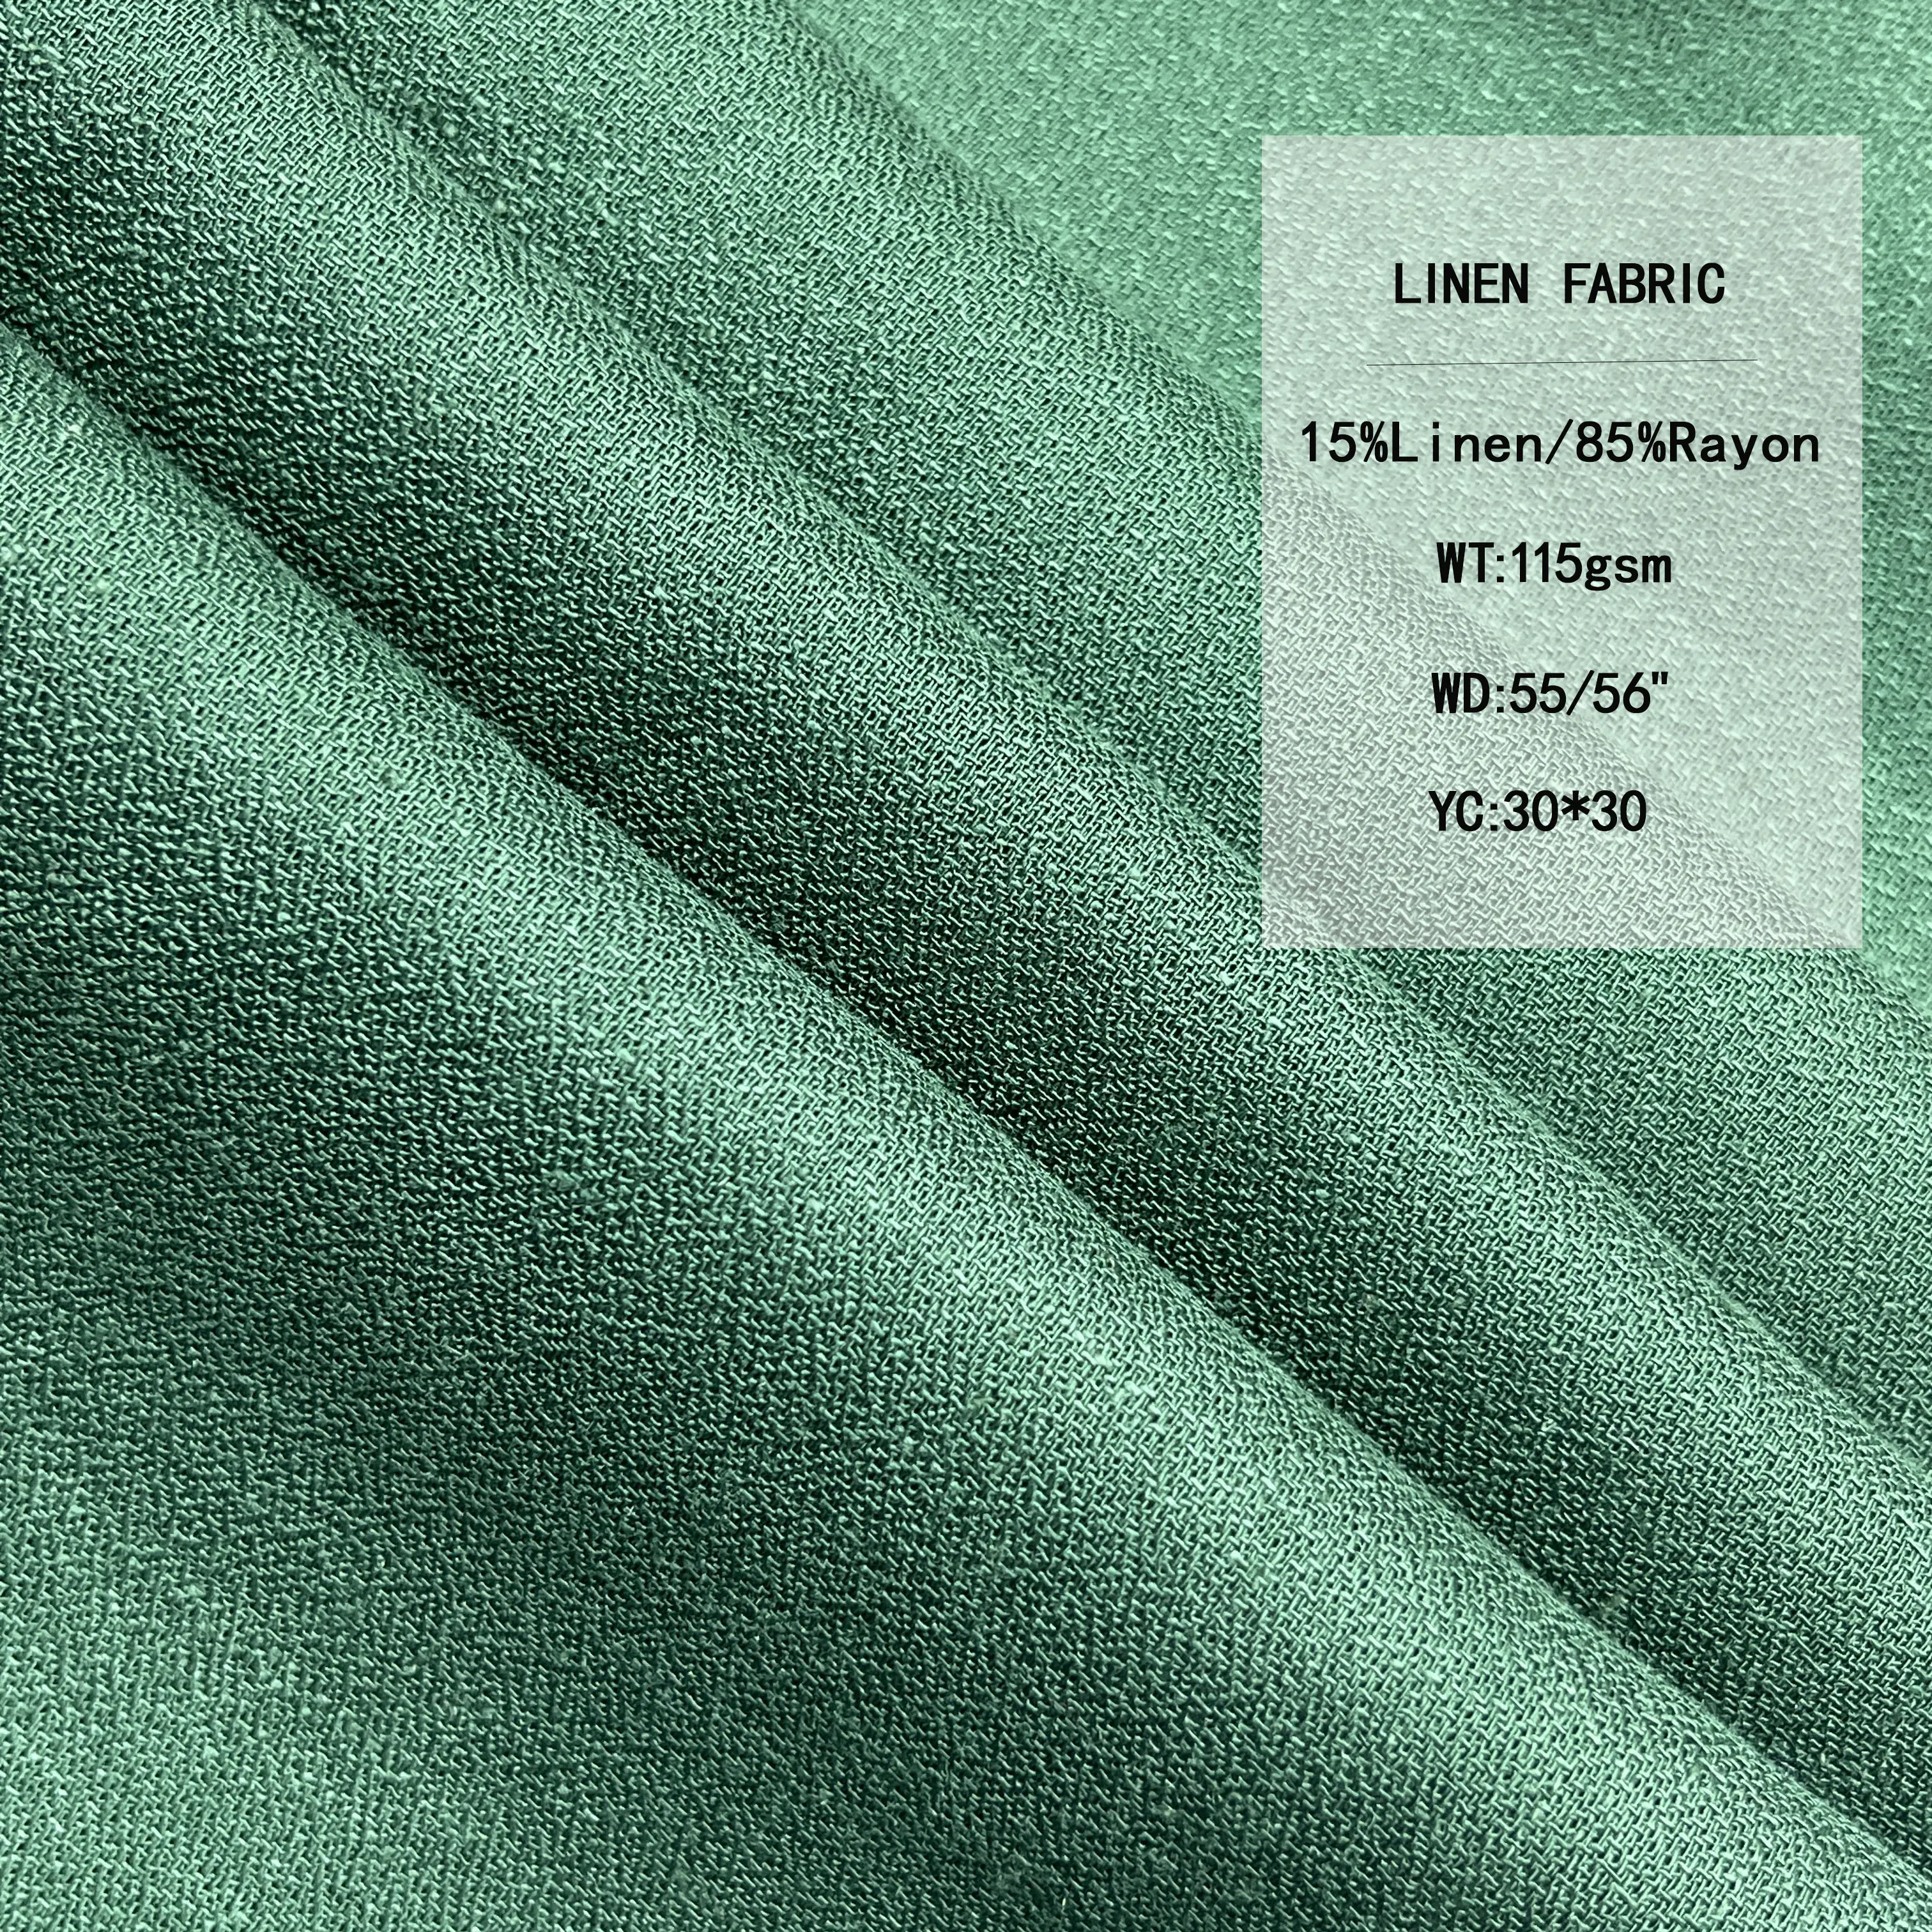 Çok renkli seçenek 115GSM 15% keten ve giyim için 85% Rayon kumaş toptan pamuk keten kumaşlar